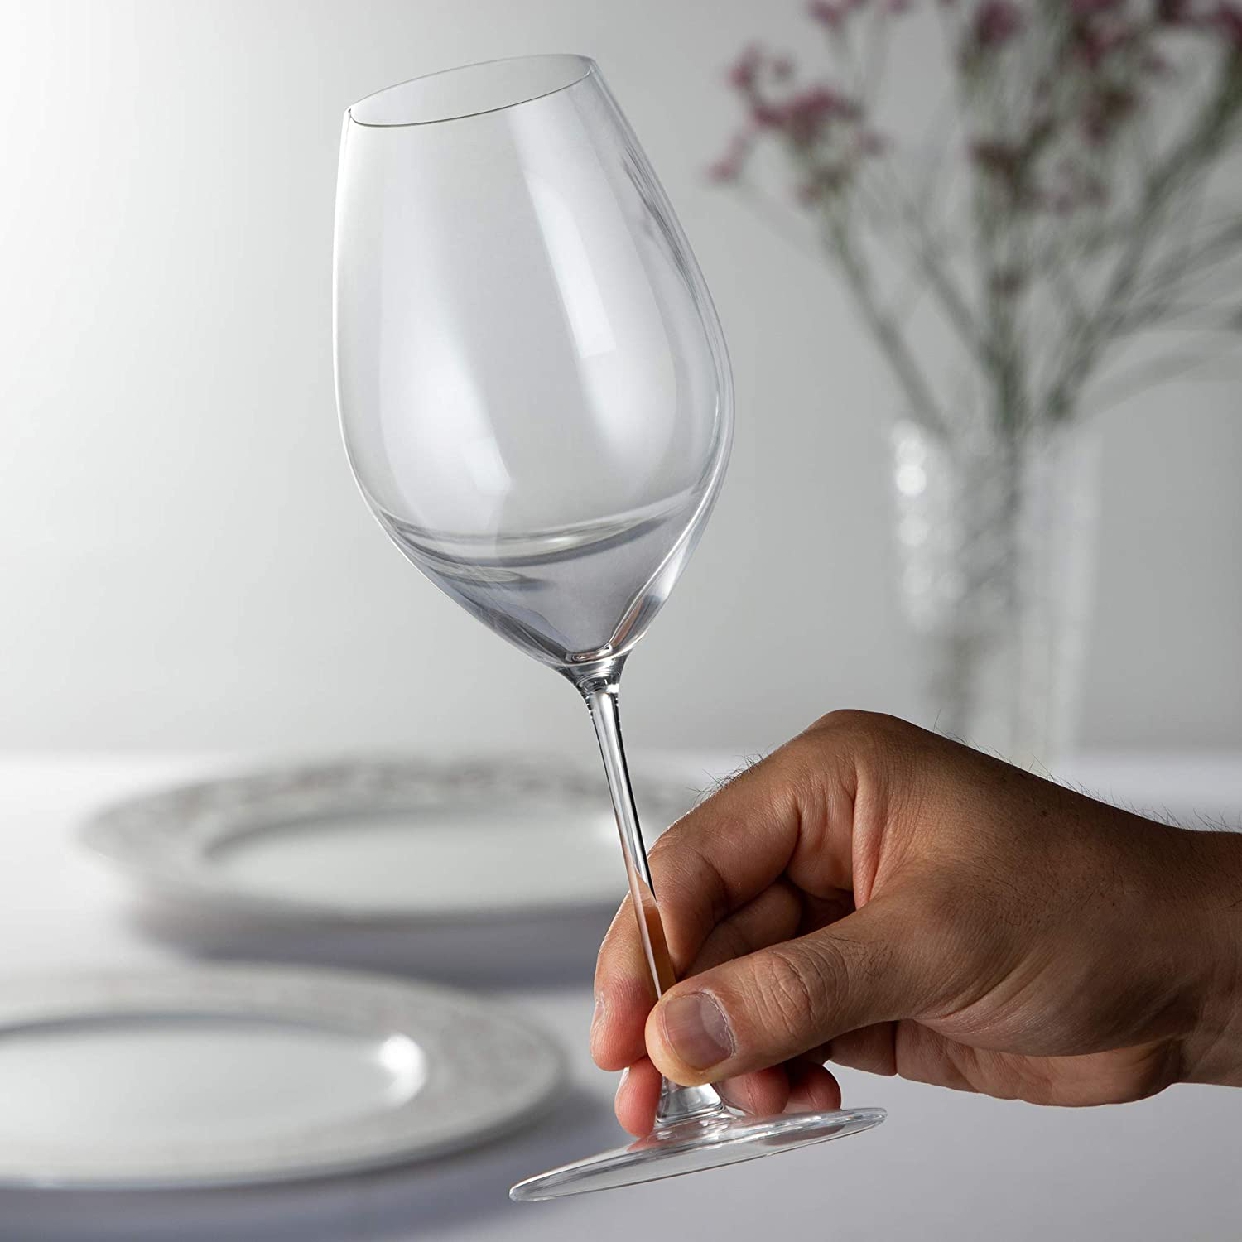 RIEDEL(リーデル) リーデル・ヴェリタス シャンパーニュ・ワイン・グラスの商品画像3 